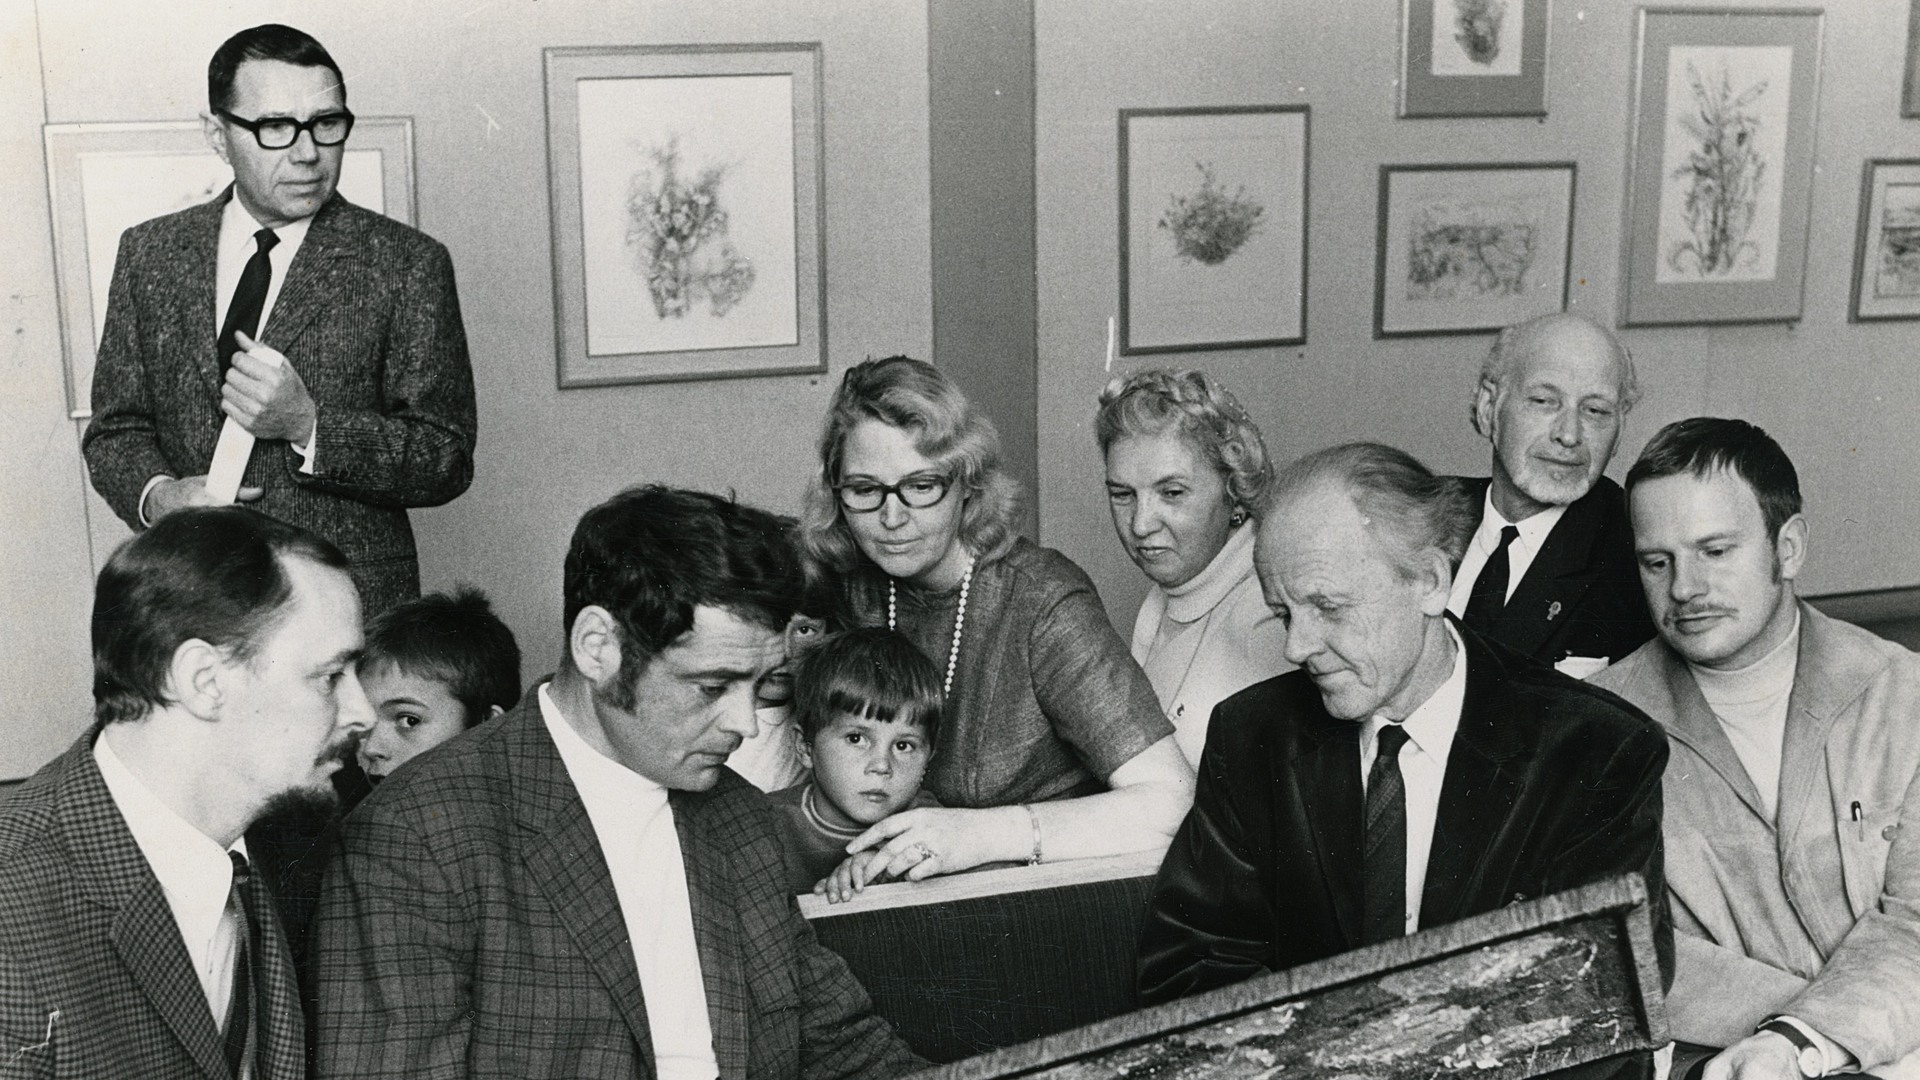 Ett svart-vitt foto på flera människor som sitter tillsammans i en utställningssal och tittar på en målning.